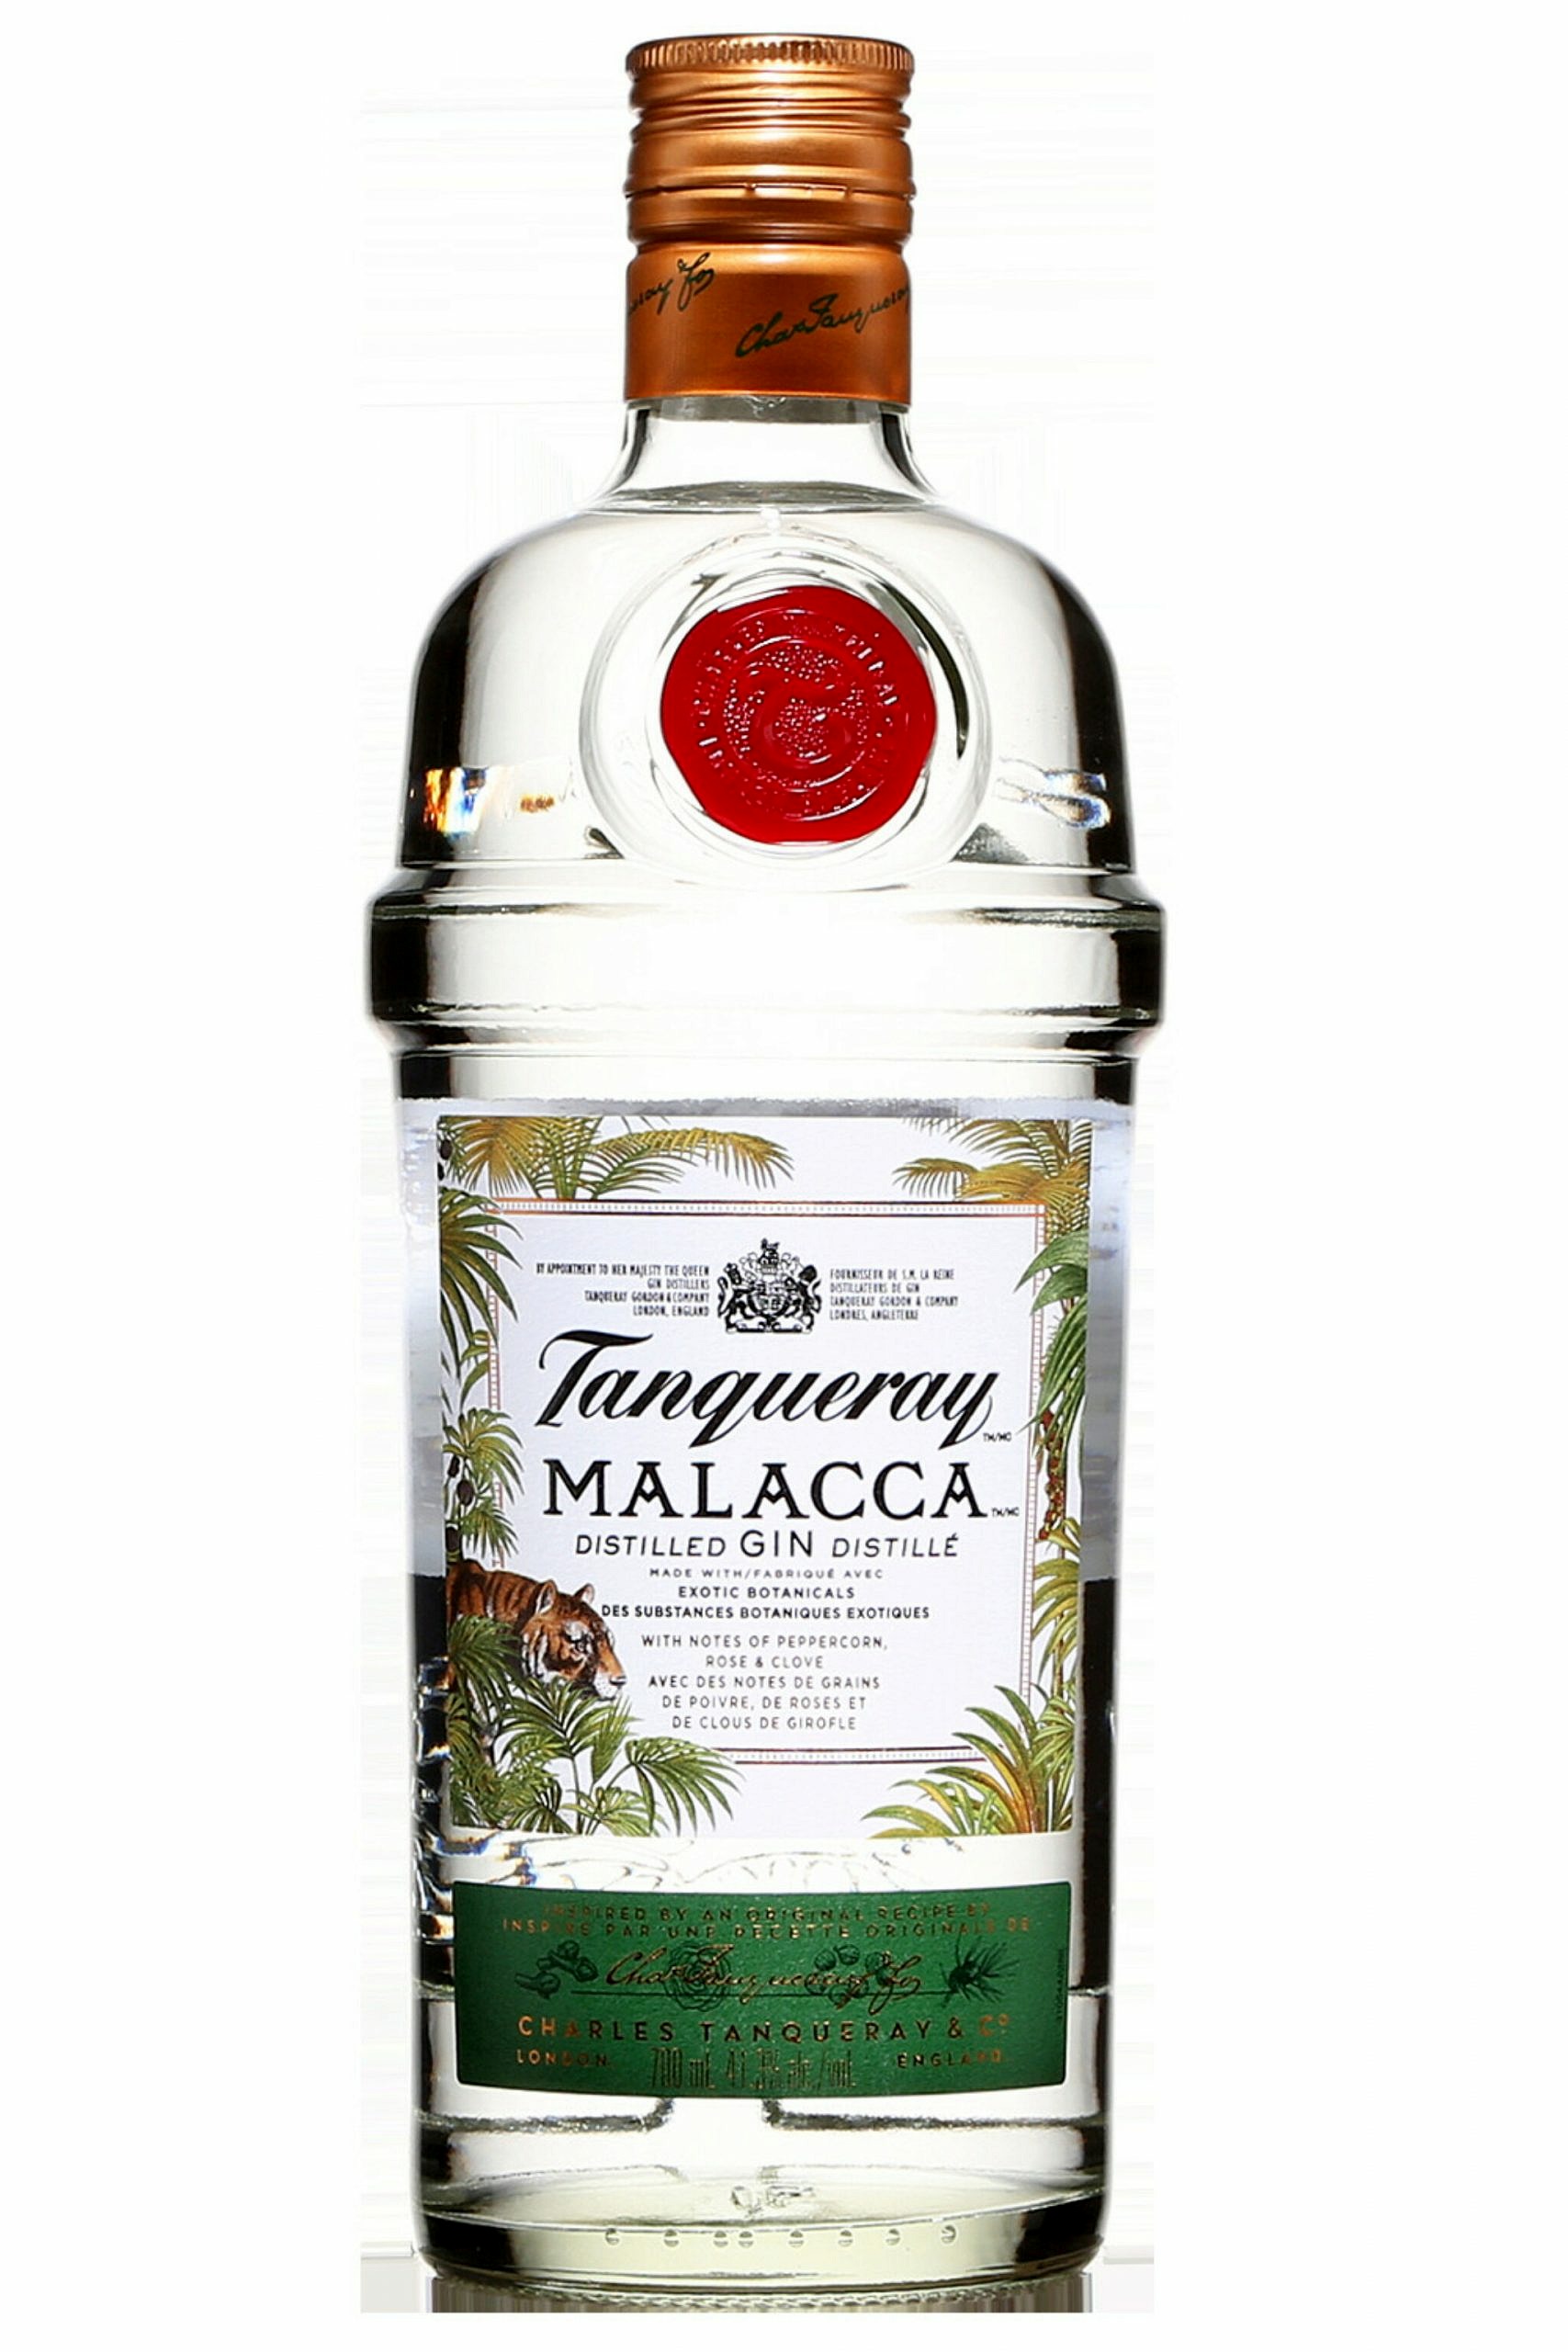 Tanqueray London Dry Gin Review - Profil De Goût Et Cocktails